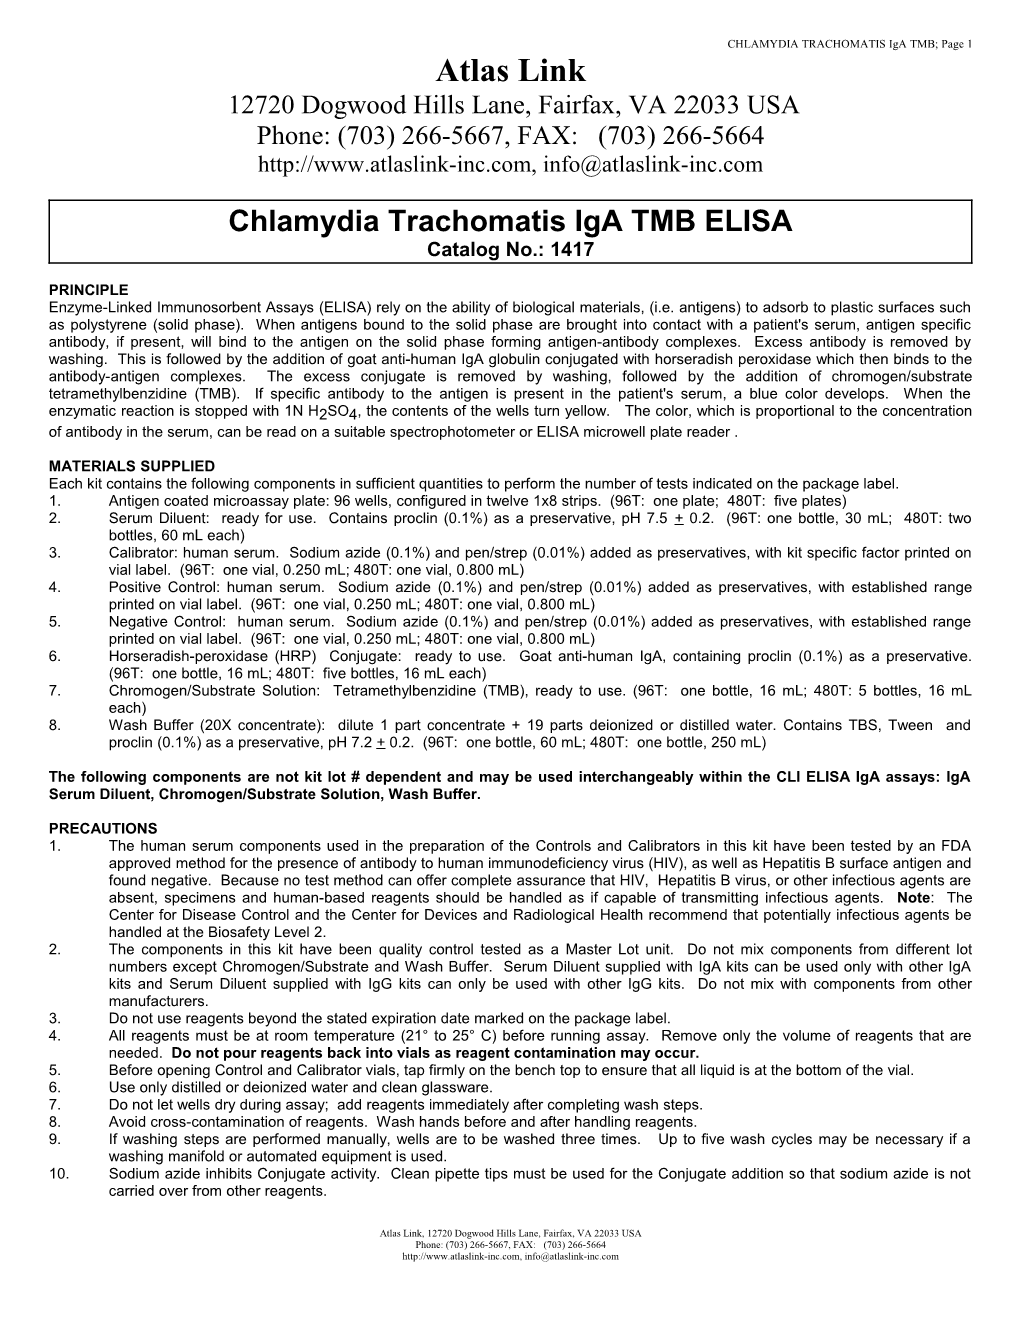 Chlamydia Trachomatis Iga TMB ELISA